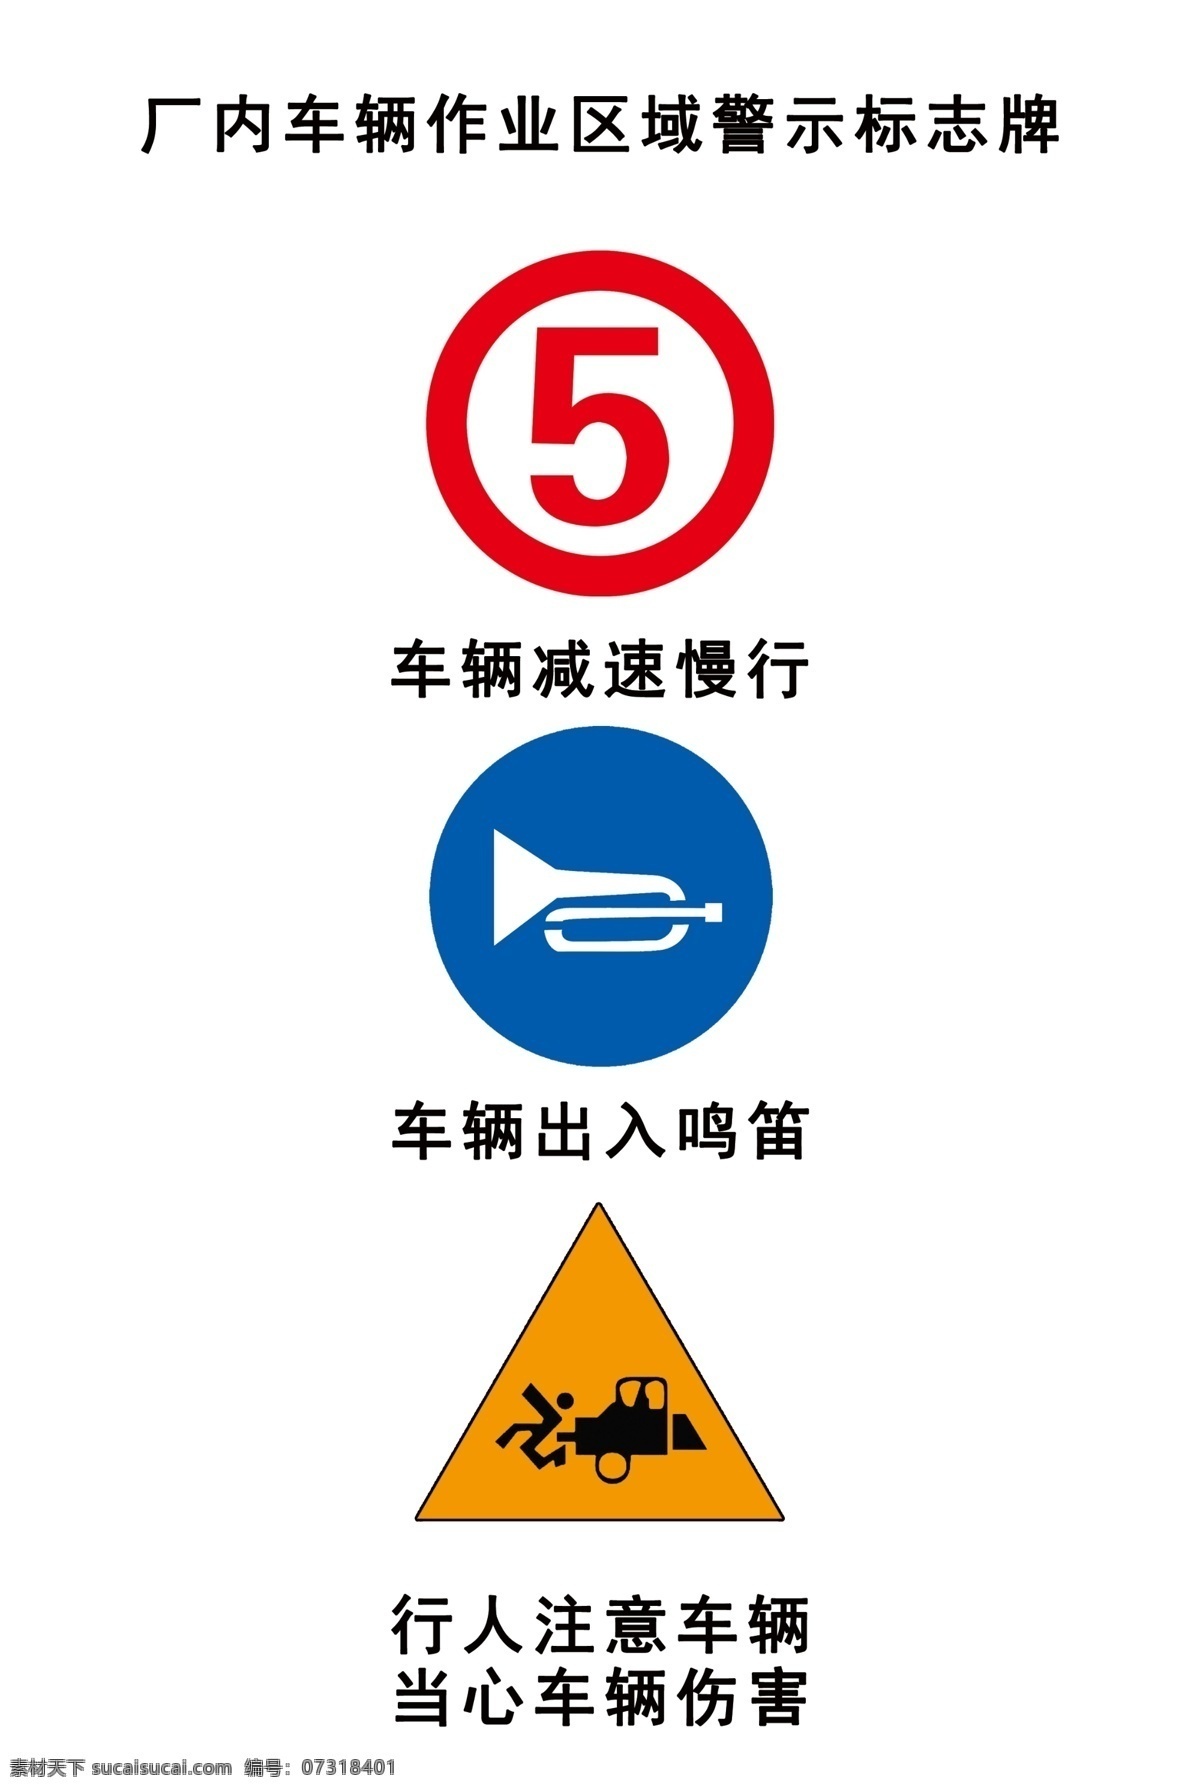 厂区 车辆 作业 区域 警示 标识 牌 减速慢行 出入鸣笛 注意车辆 当心车辆伤害 标志图标 公共标识标志